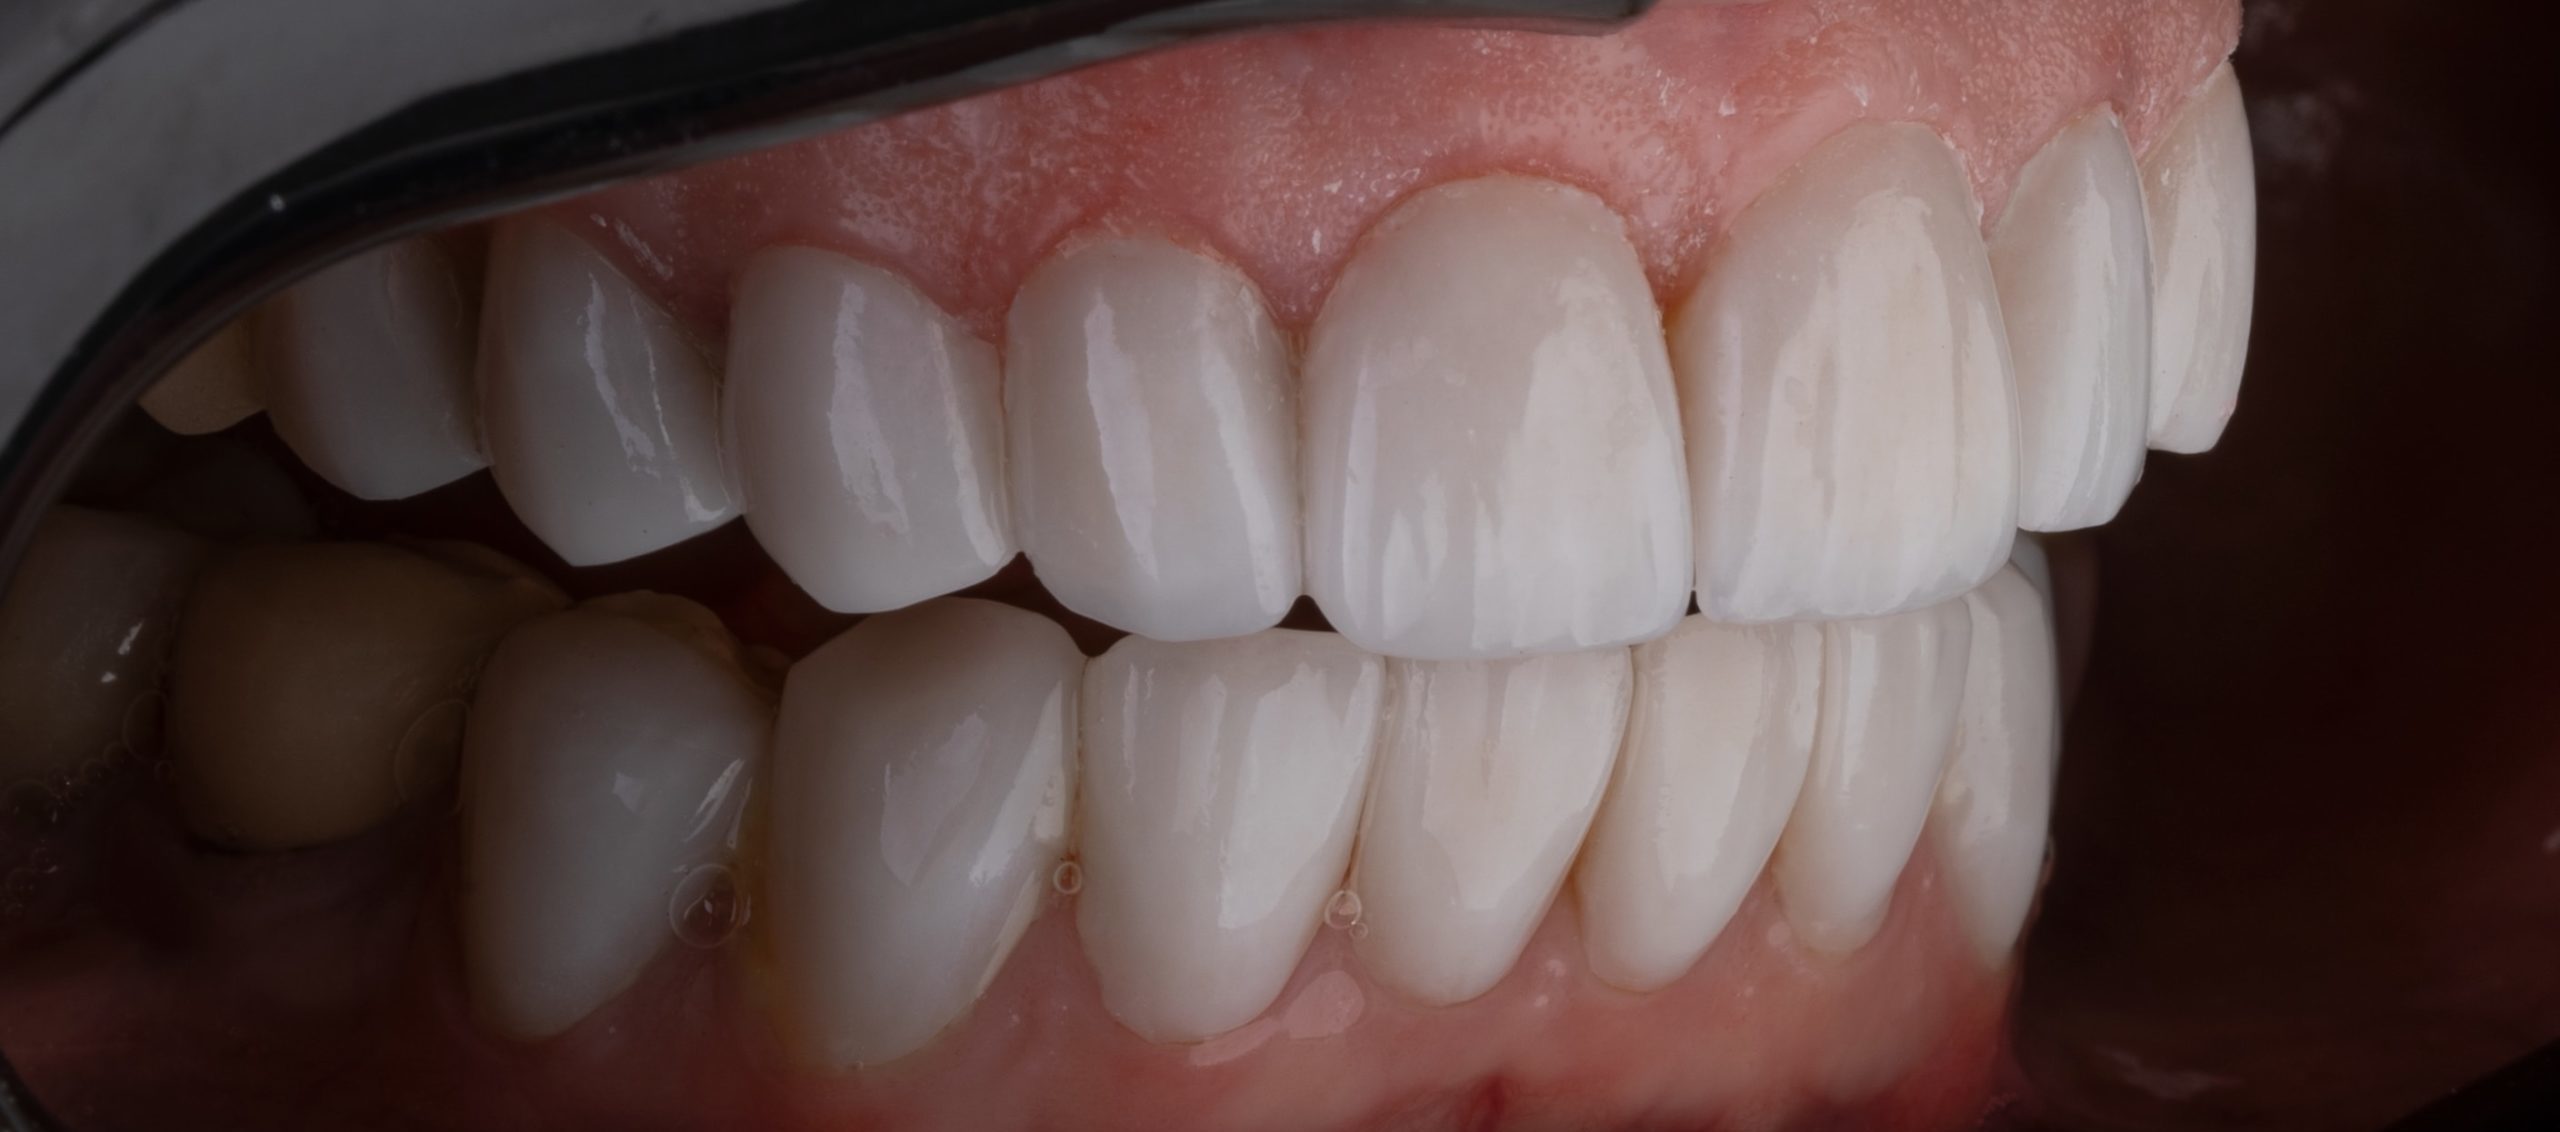 Full view of teeth